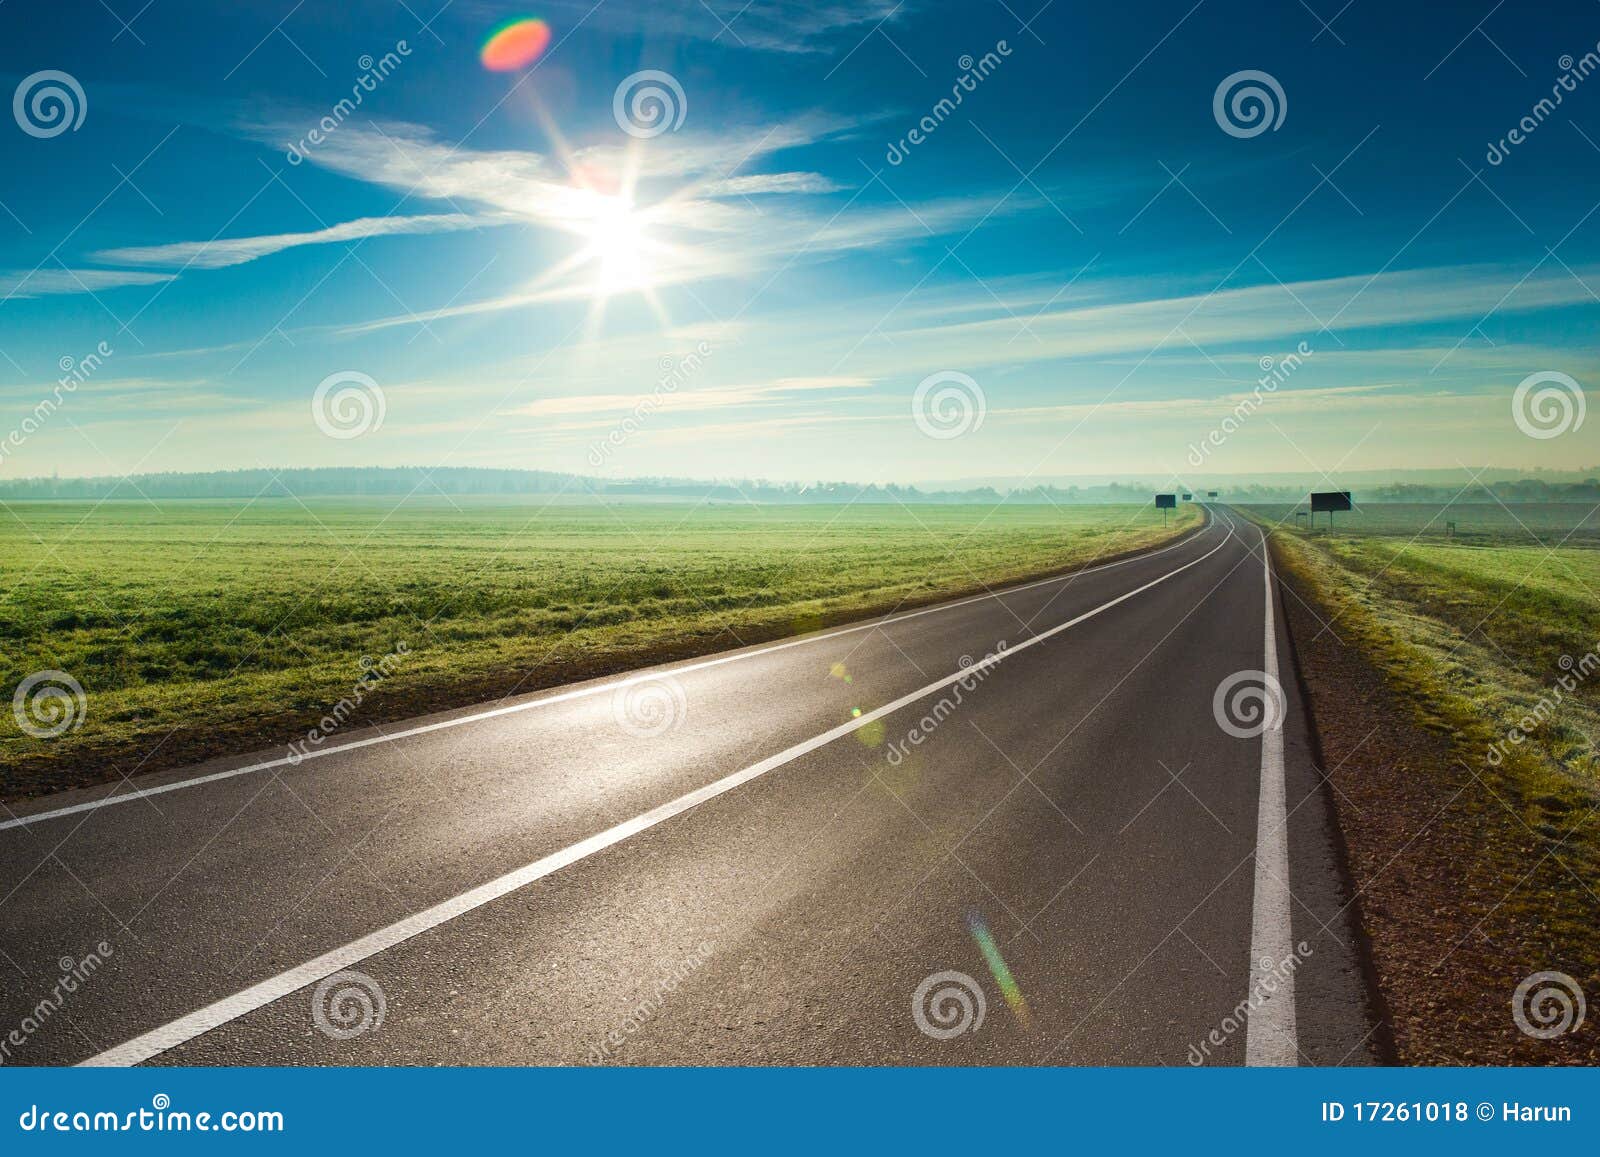 highway road wallpaper